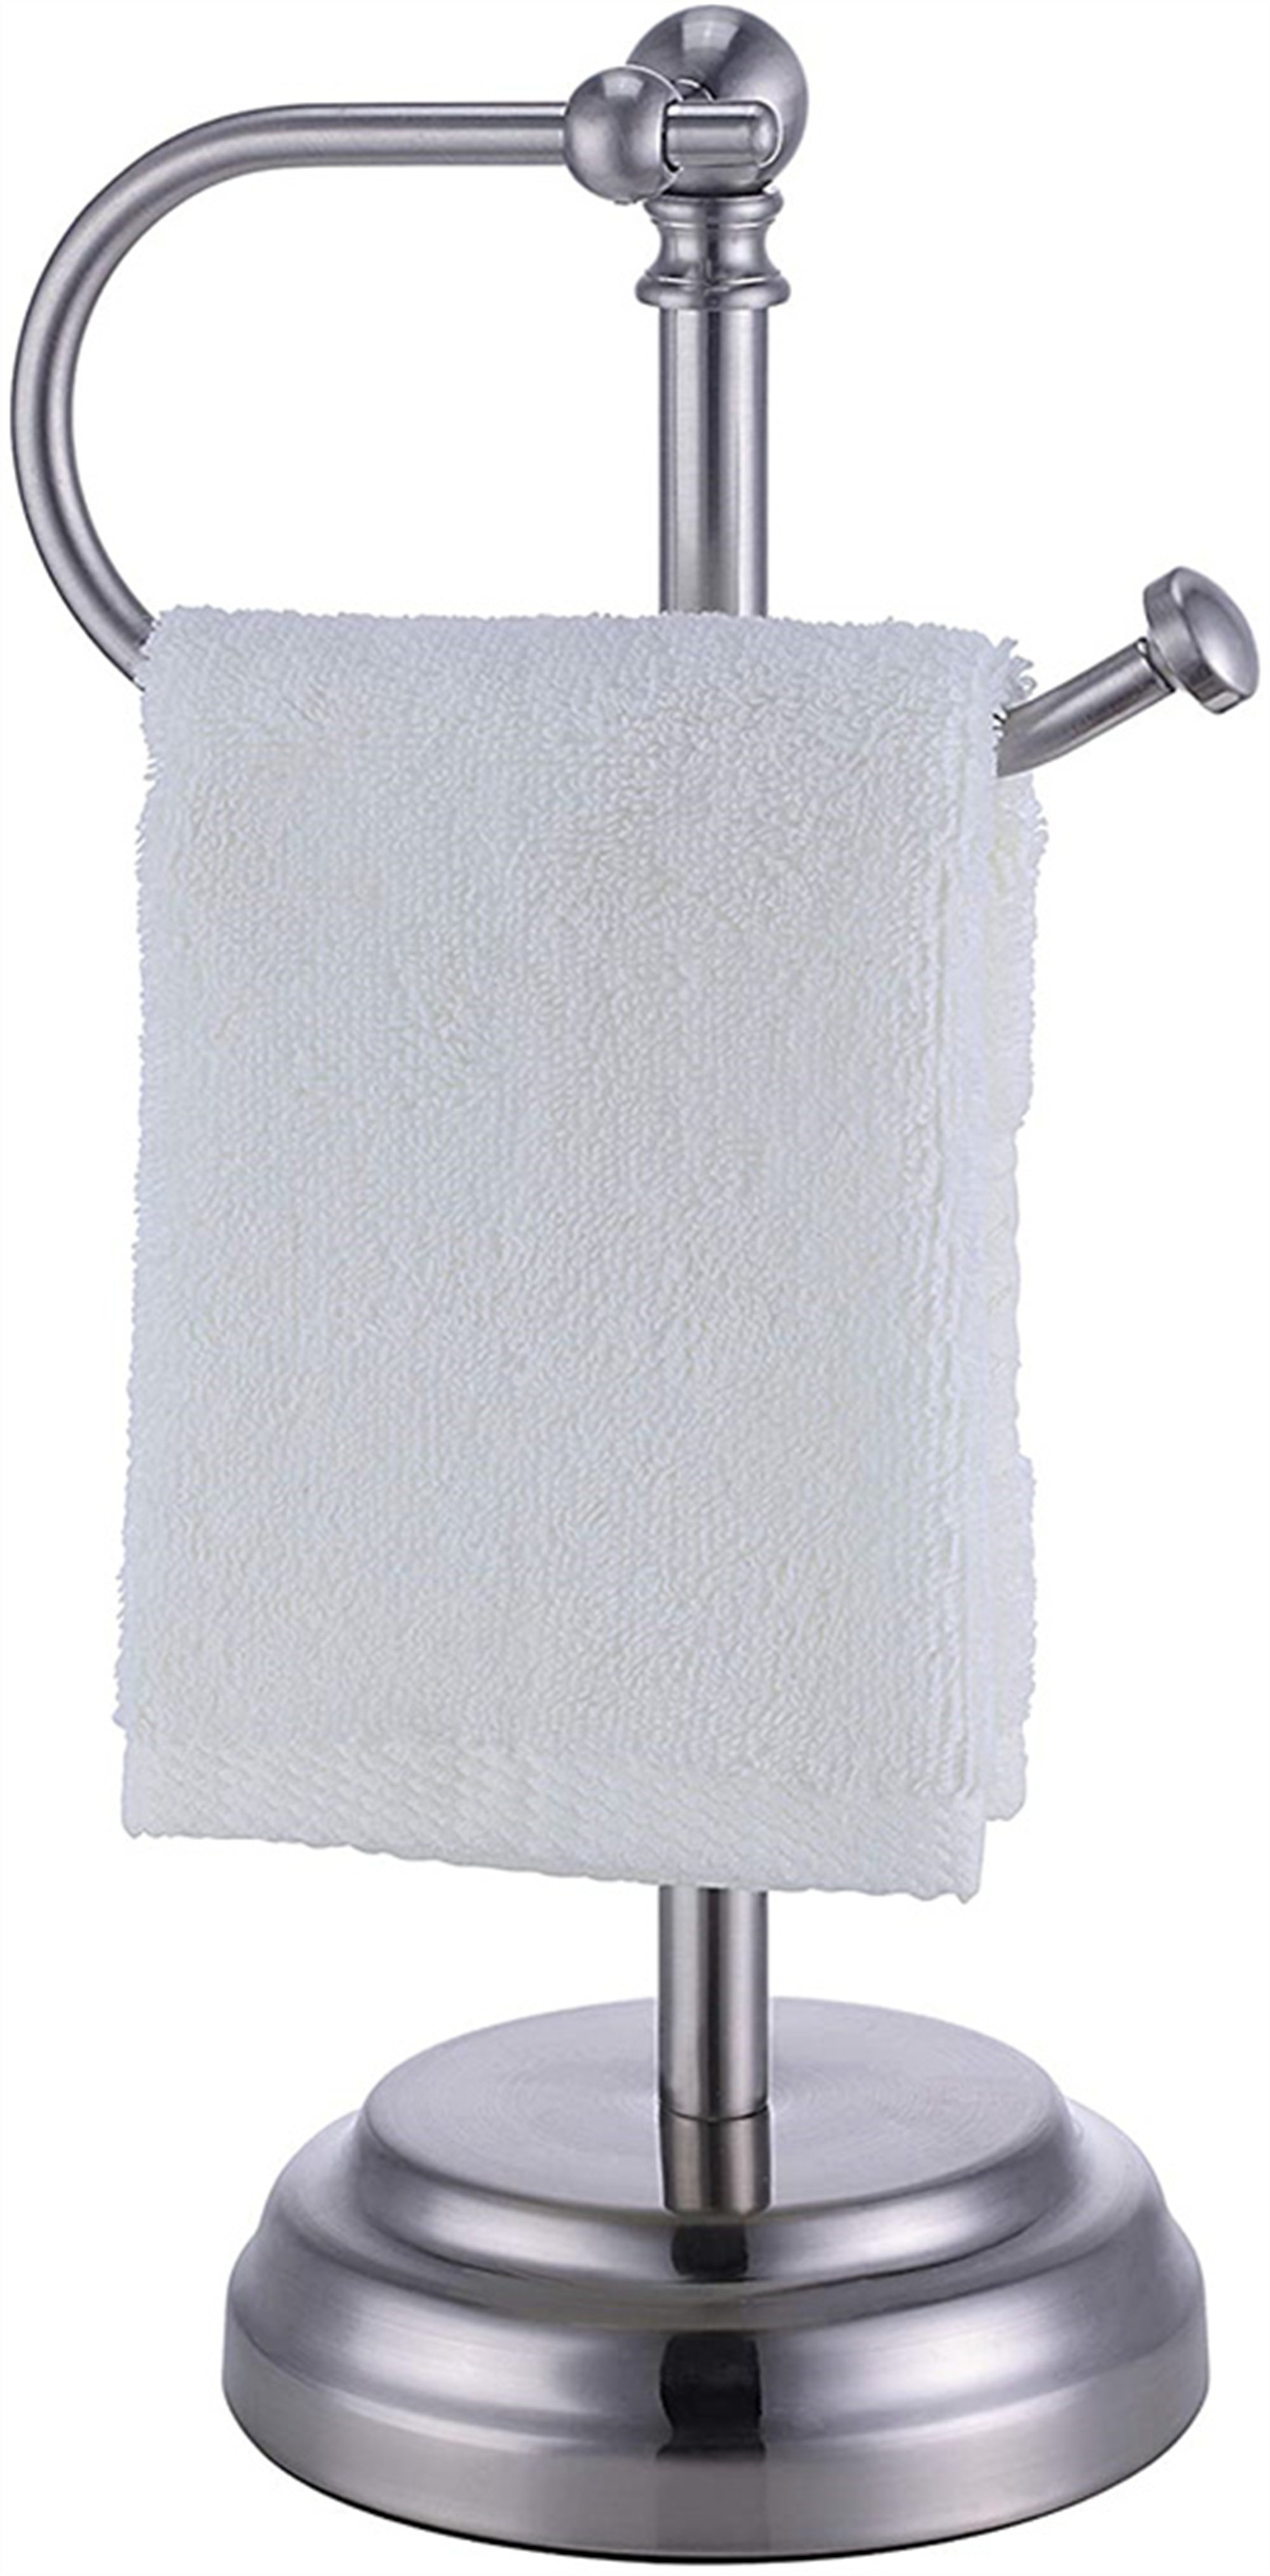 Better Homes and Garden Bathroom Freestanding Hand Towel Holder in Satin Nickel 